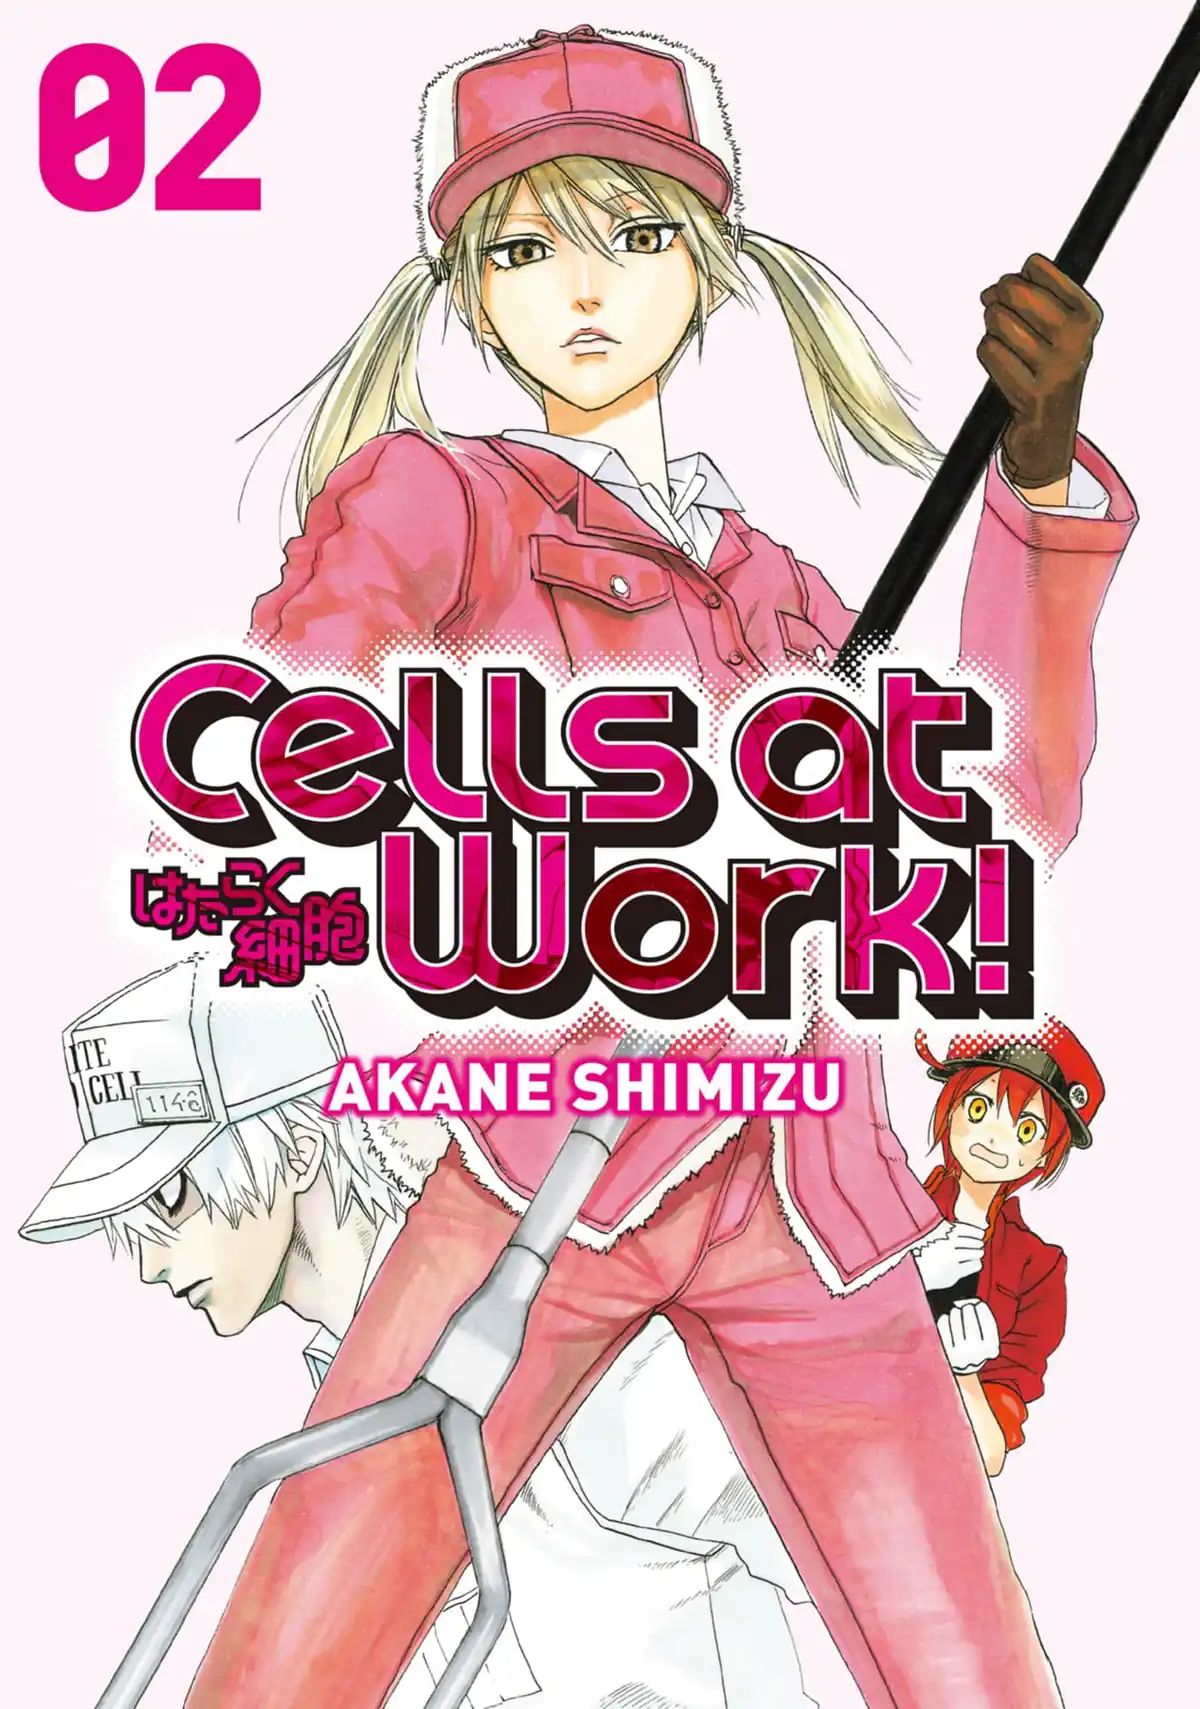 Hataraku saibou Anthology Japanese comic manga anime Cells at Work!